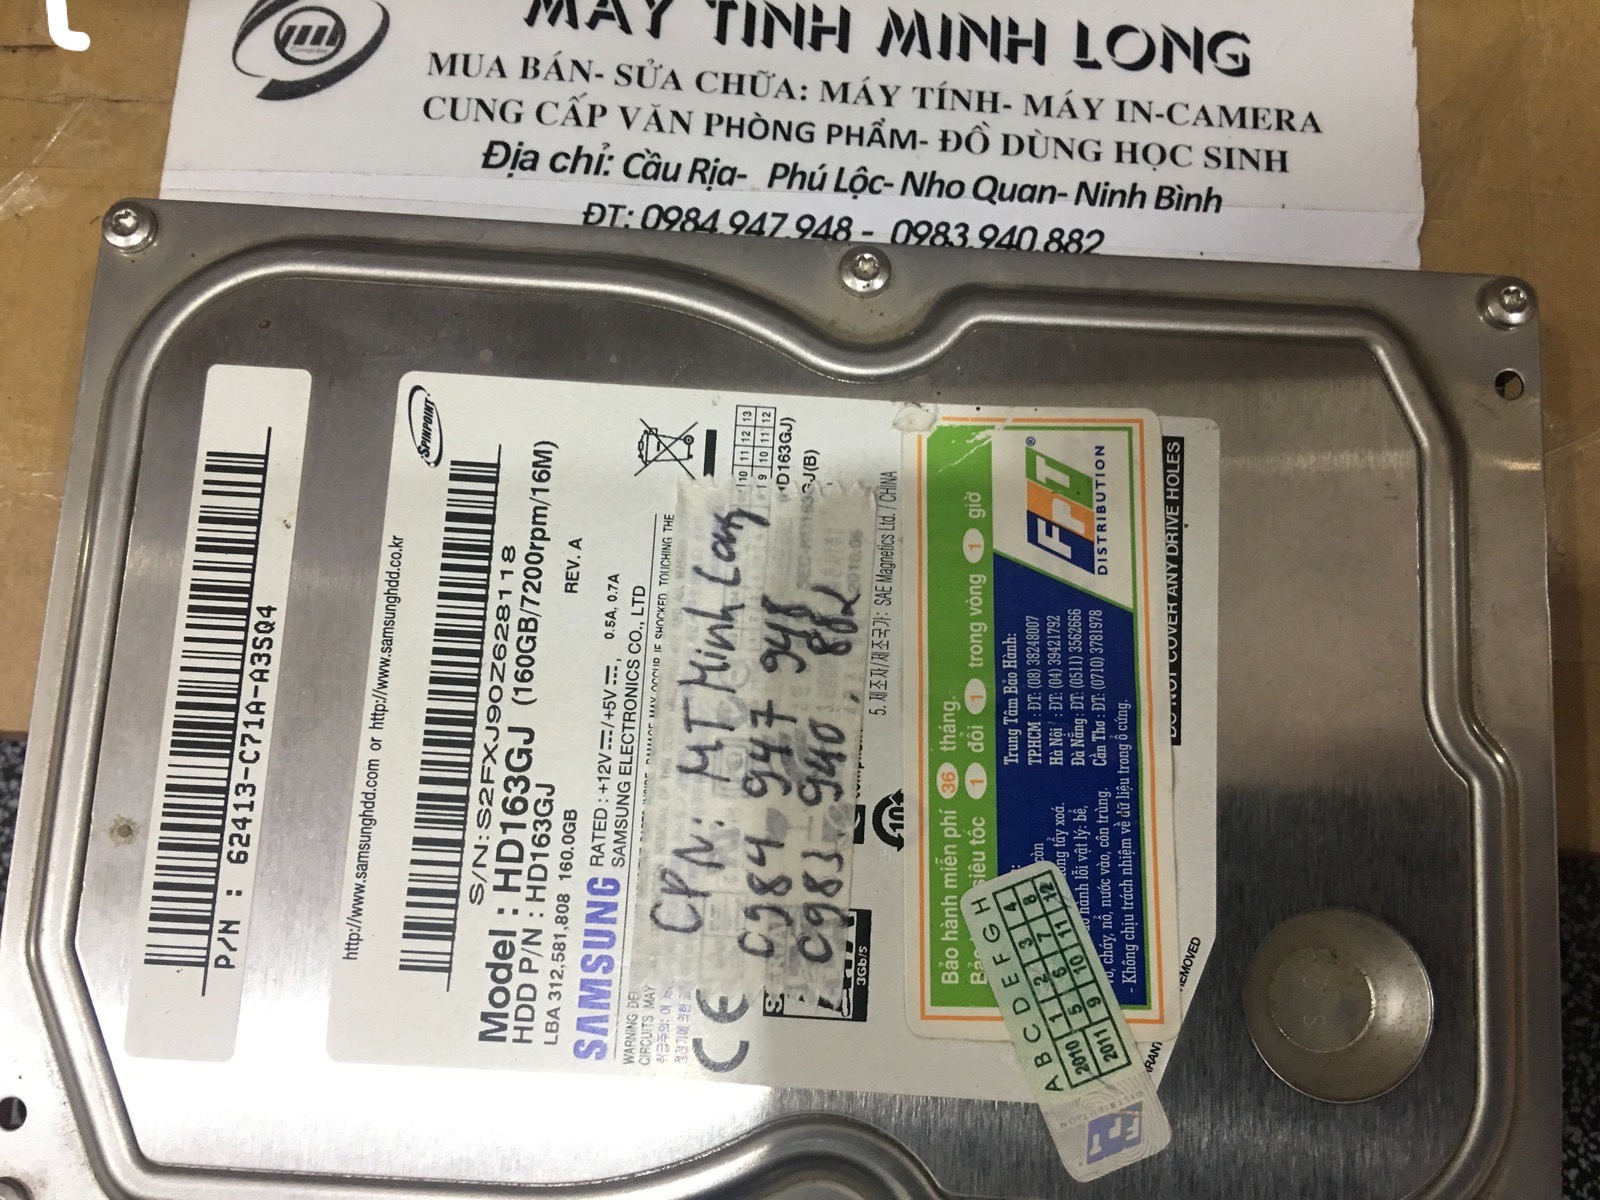 Lấy dữ liệu ổ cứng Samsung 160GB không nhận tại Ninh Bình 11/03/2020 - cuumaytinh